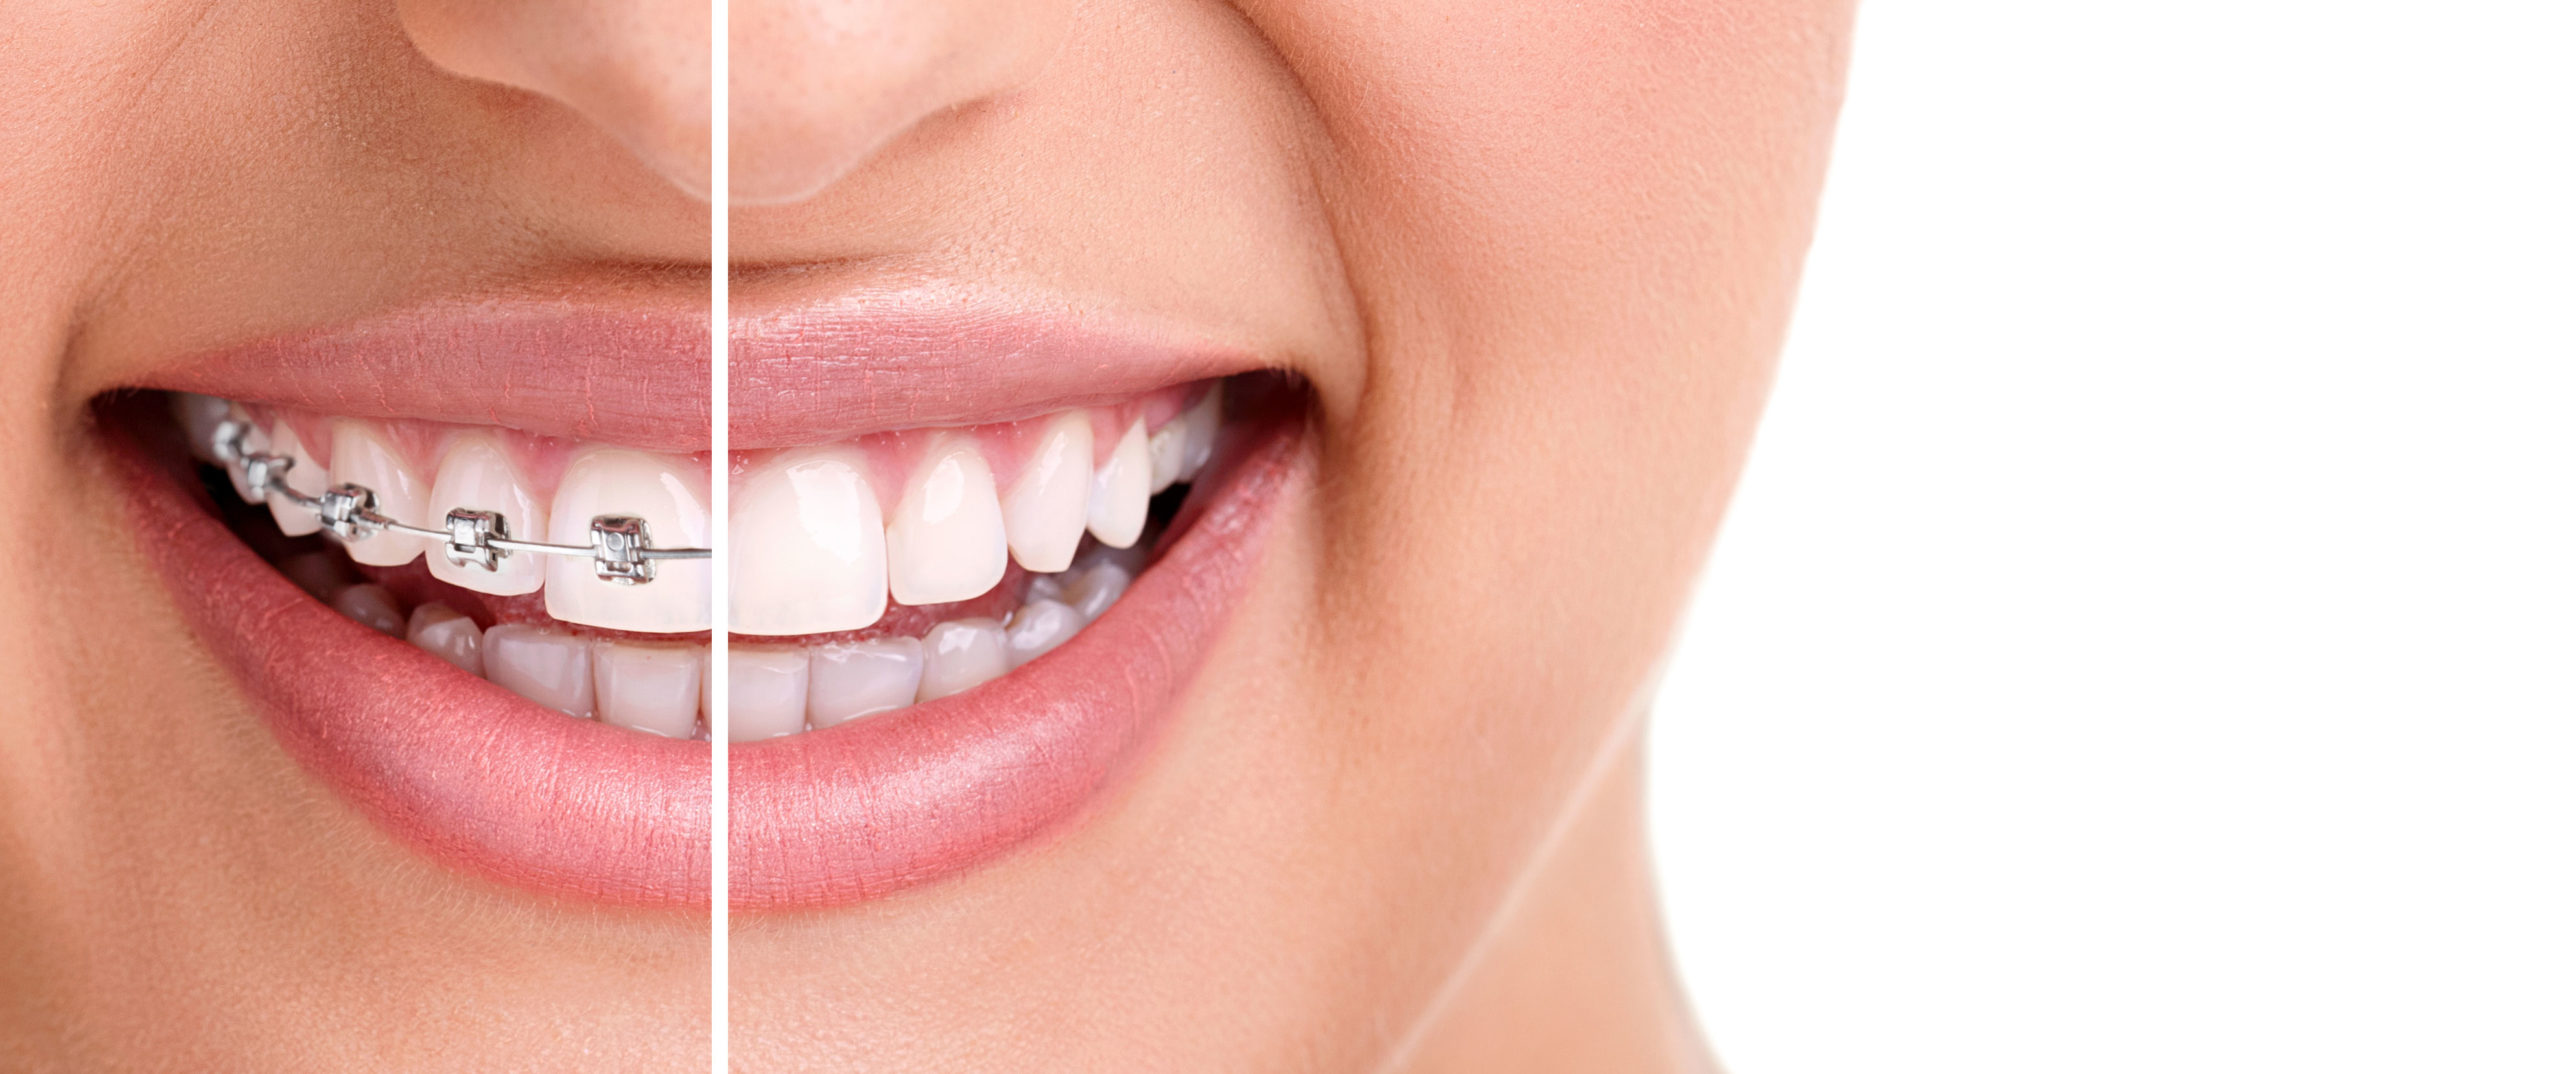 ortodonzia invisibile: sorriso con apparecchio